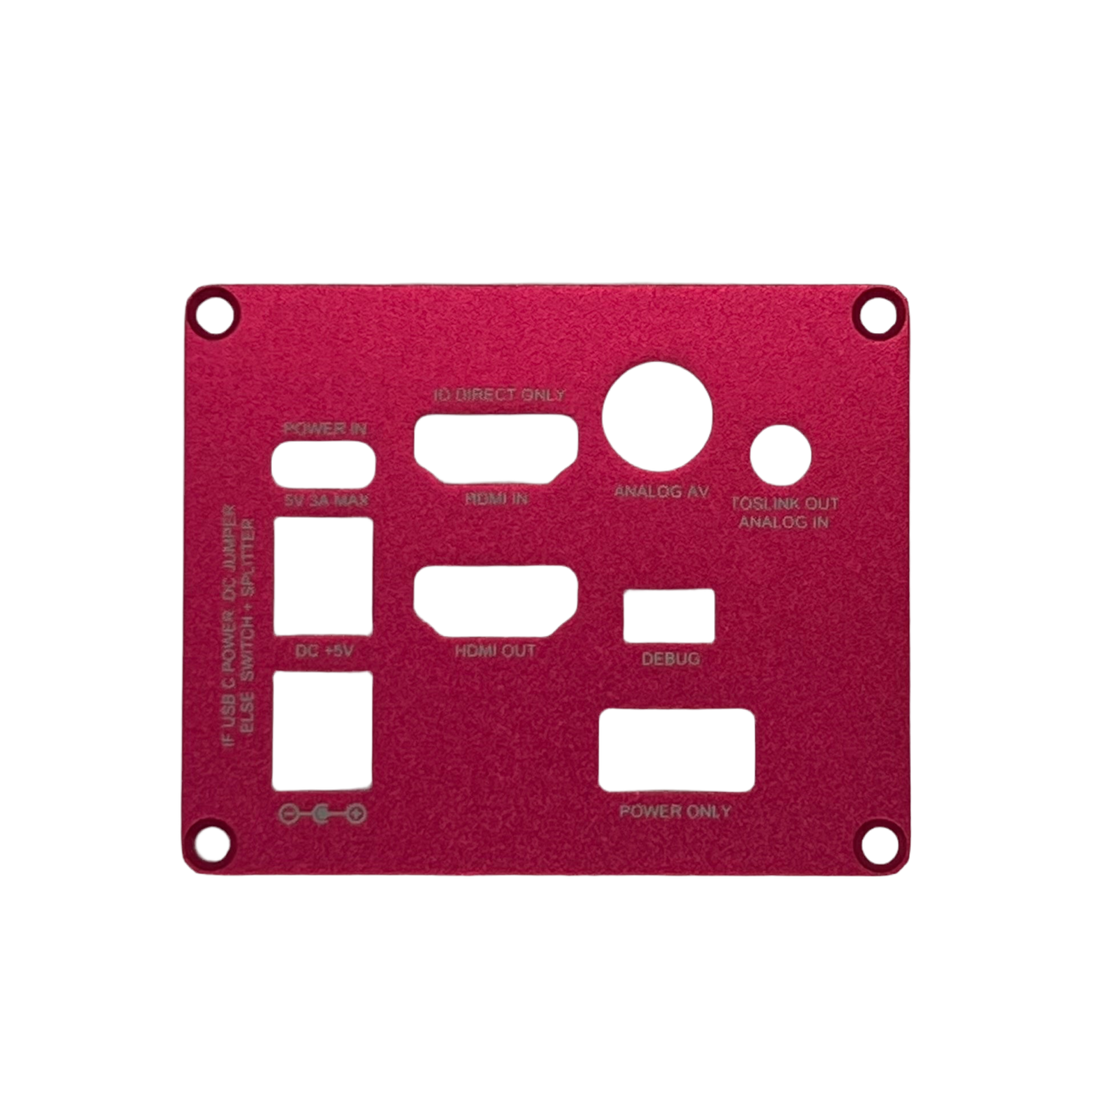 Panneaux de boîtier à refroidissement passif en aluminium MiSTer FPGA